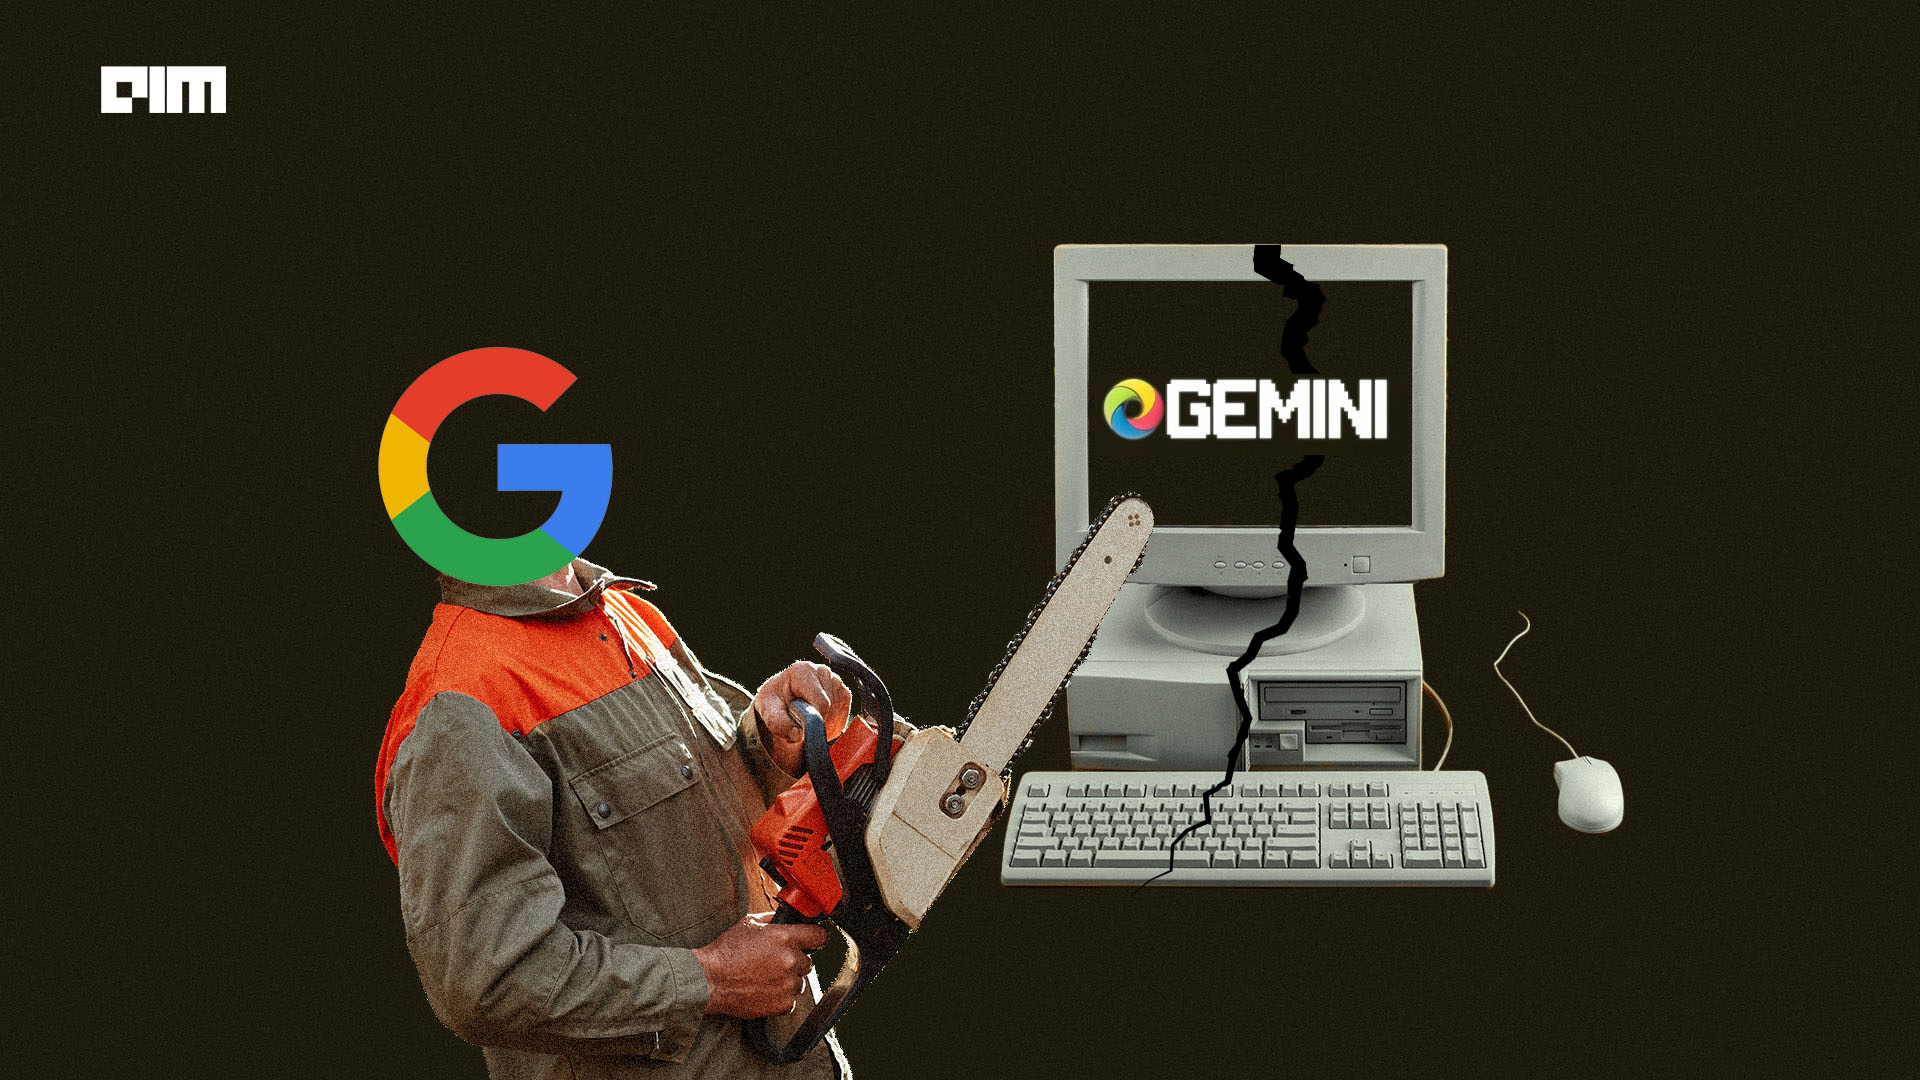 Google Likely to Kill Gemini “Bold & Responsibly”